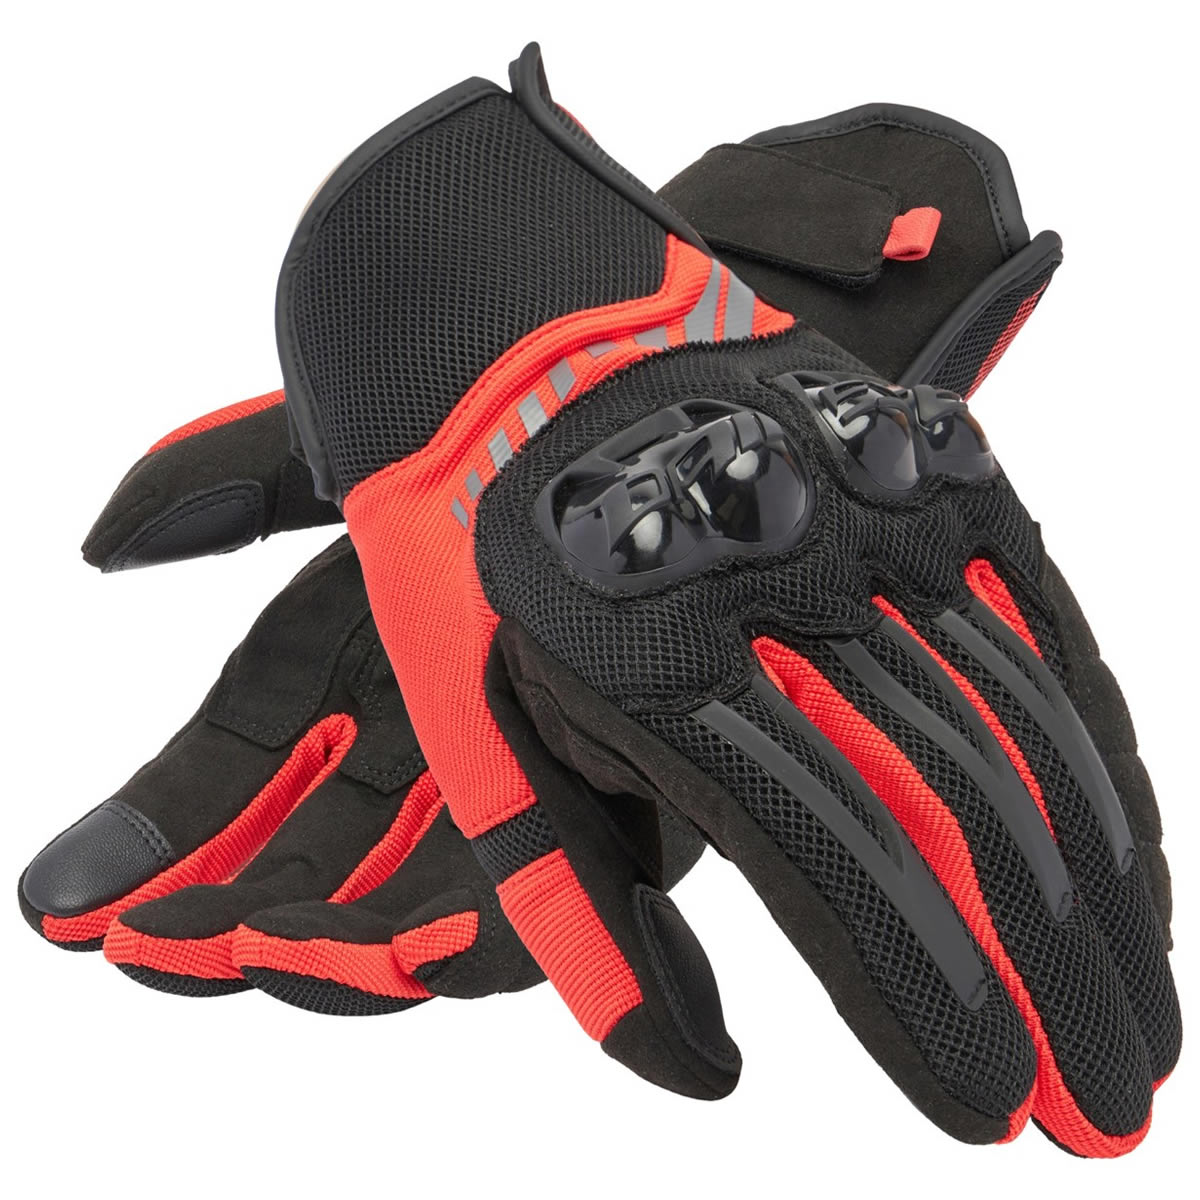 Dainese Handschuhe Mig 3 Air Tex, schwarz-lavarot